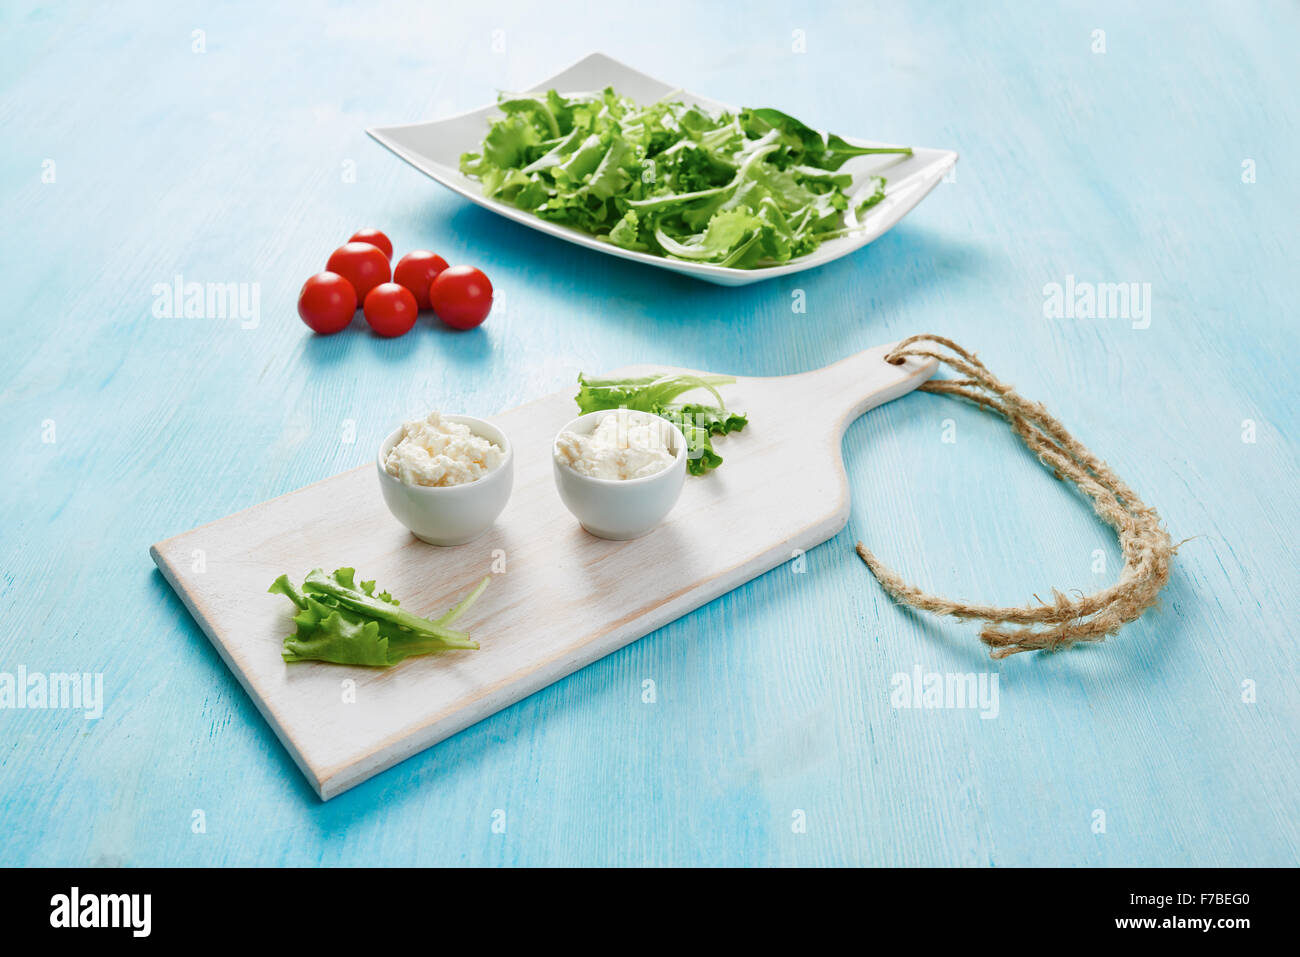 Le fromage cottage dans deux bols blanc sur bleu table en bois, salade et tomate Banque D'Images